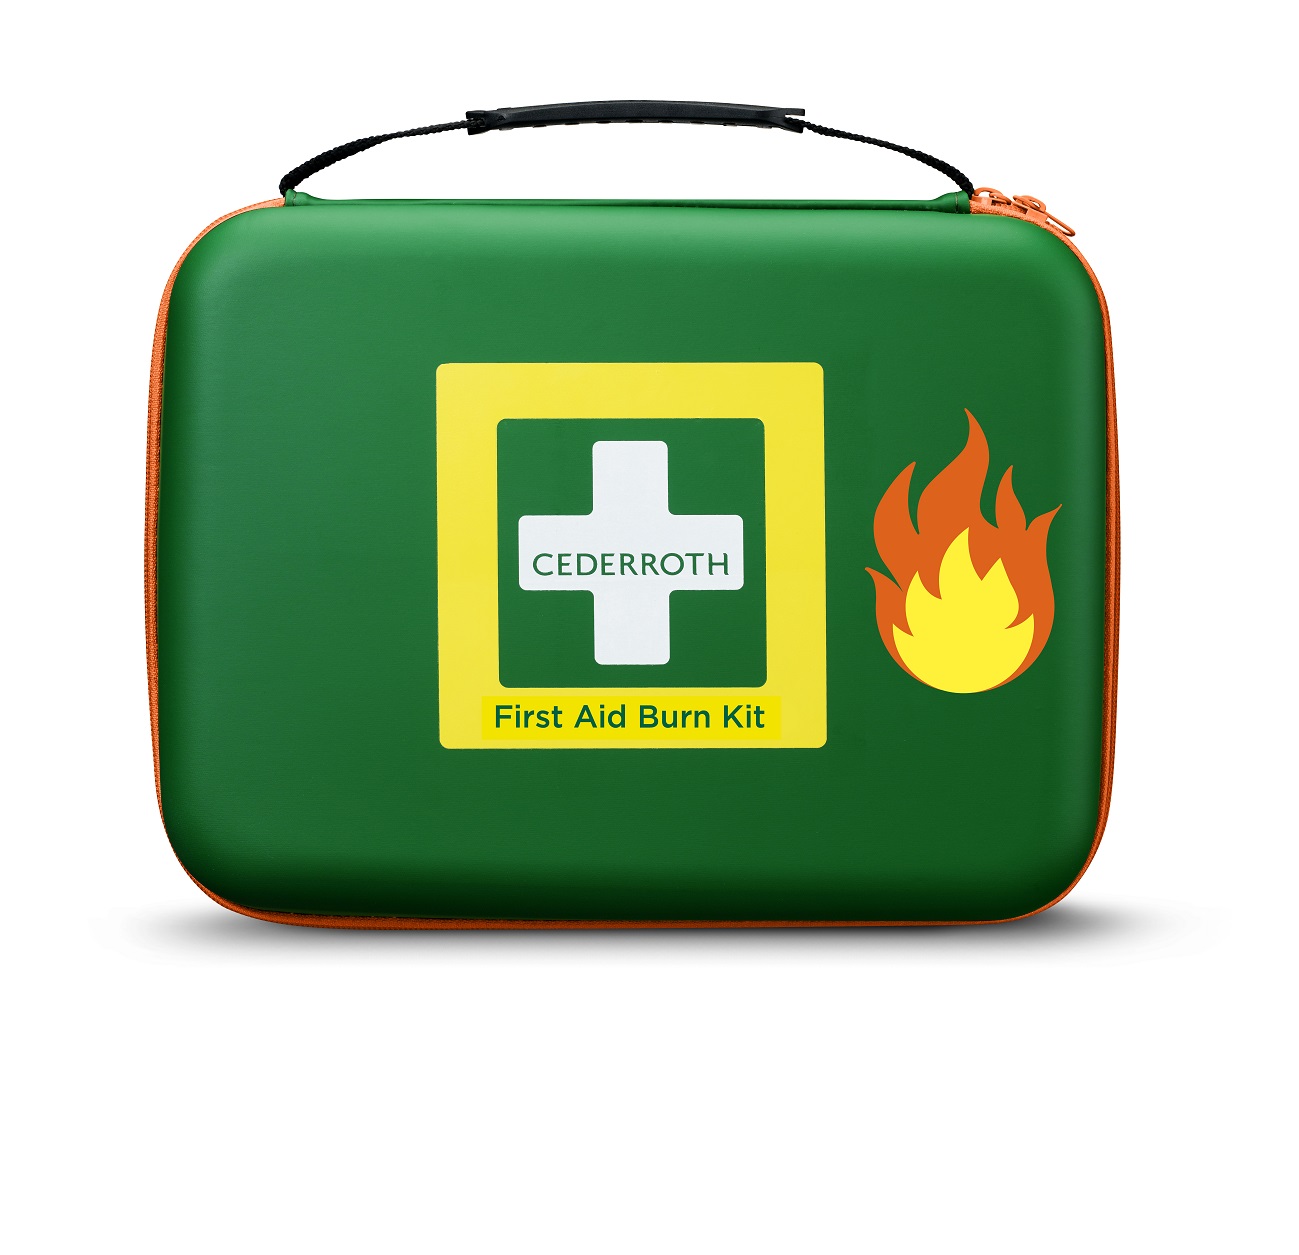 Cederroth Erste-Hilfe-Verbrennungs-Koffer